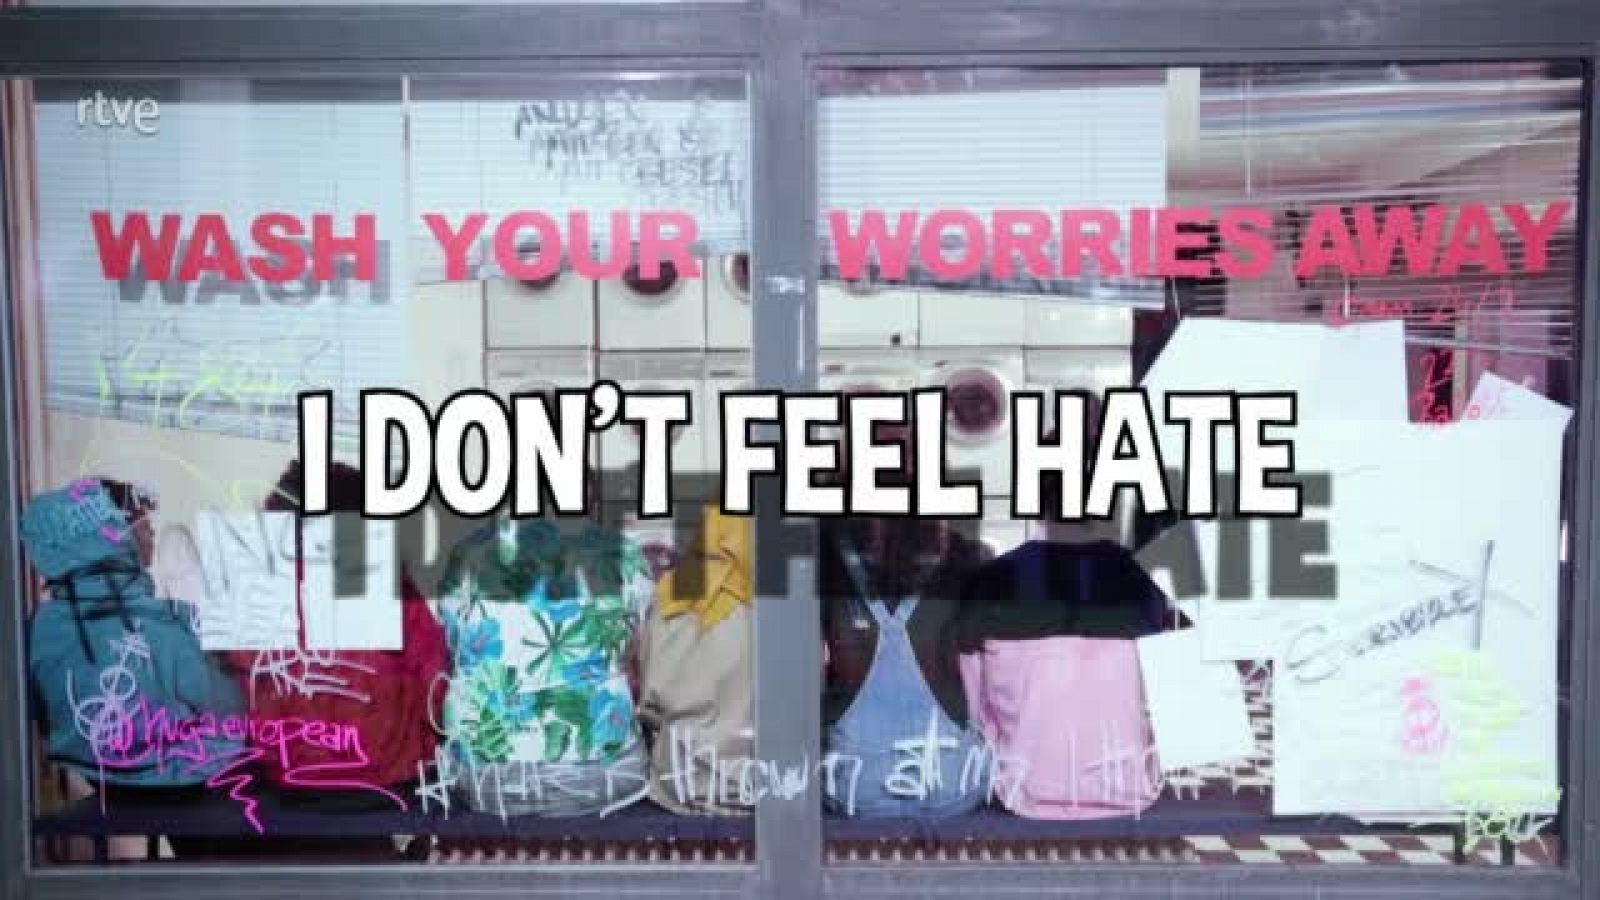 Eurovisión - Jendrik de Alemania: "I don't feel hate" (Videoclip)